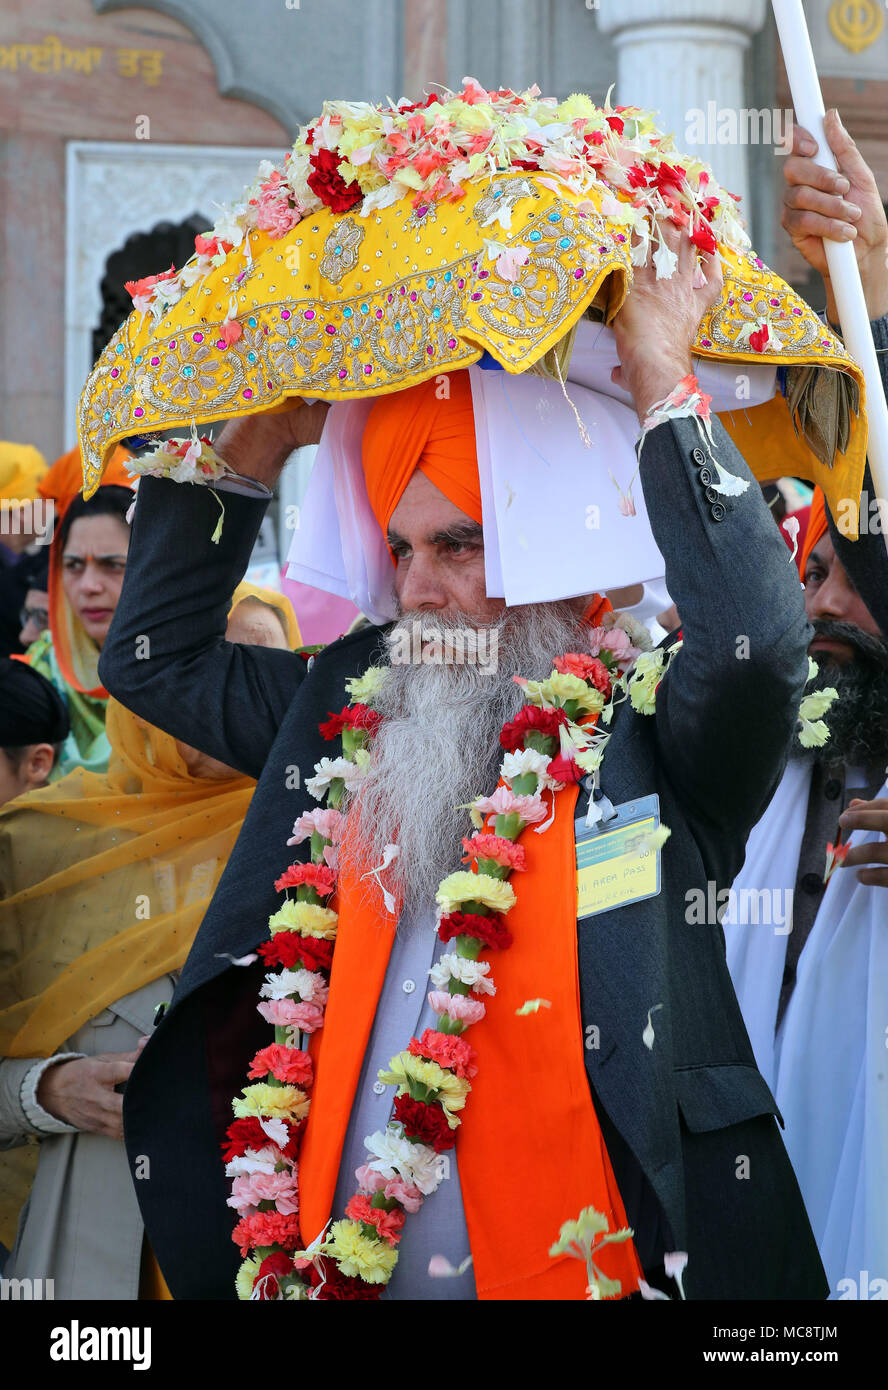 Il Guru Granth Sahib i sikh libro sacro, è portato dal Guru Nanak Gurdwara Darbar tempio durante il Nagar Kirtan processione attraverso Anzio, che fa parte del festival Sikh Vaisakhi segnando il raccolto primaverile per gli agricoltori e le comunità nel Punjab in India del nord. Foto Stock